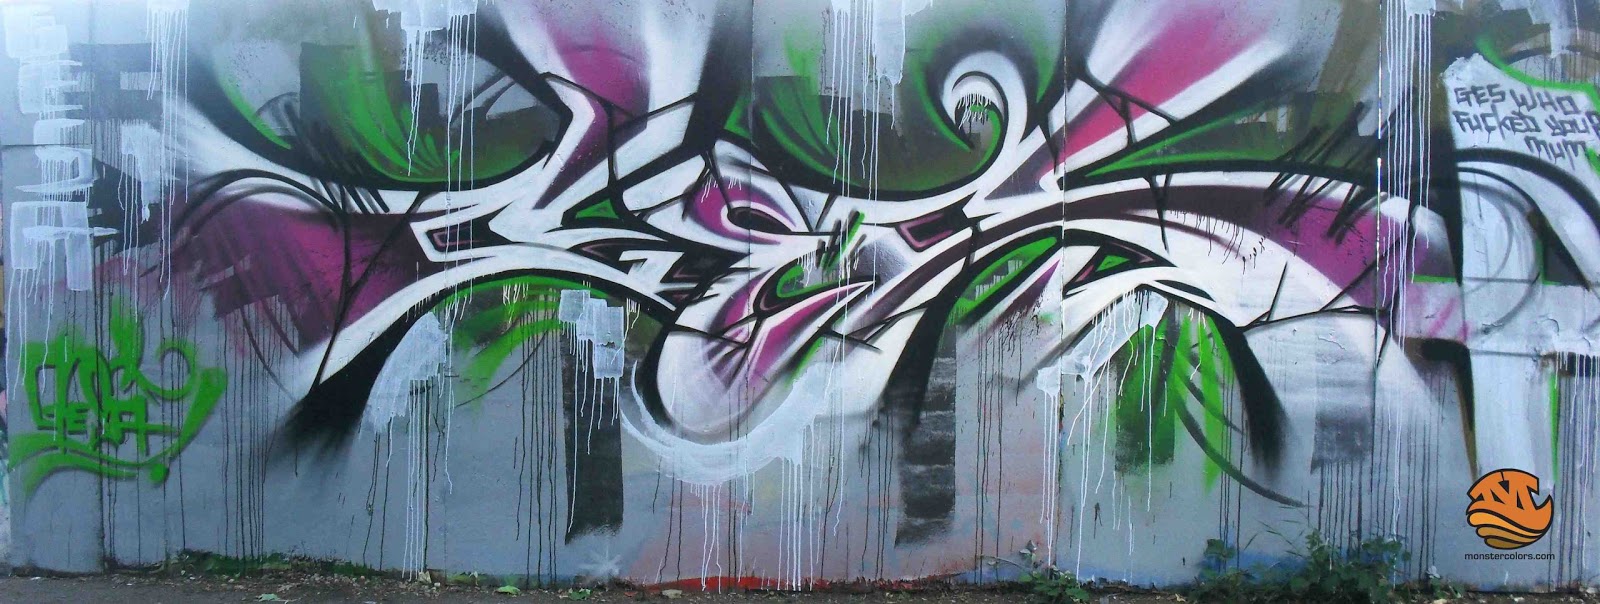 Columbia Spy Vandals Spray Paint Graffiti On Garage Door